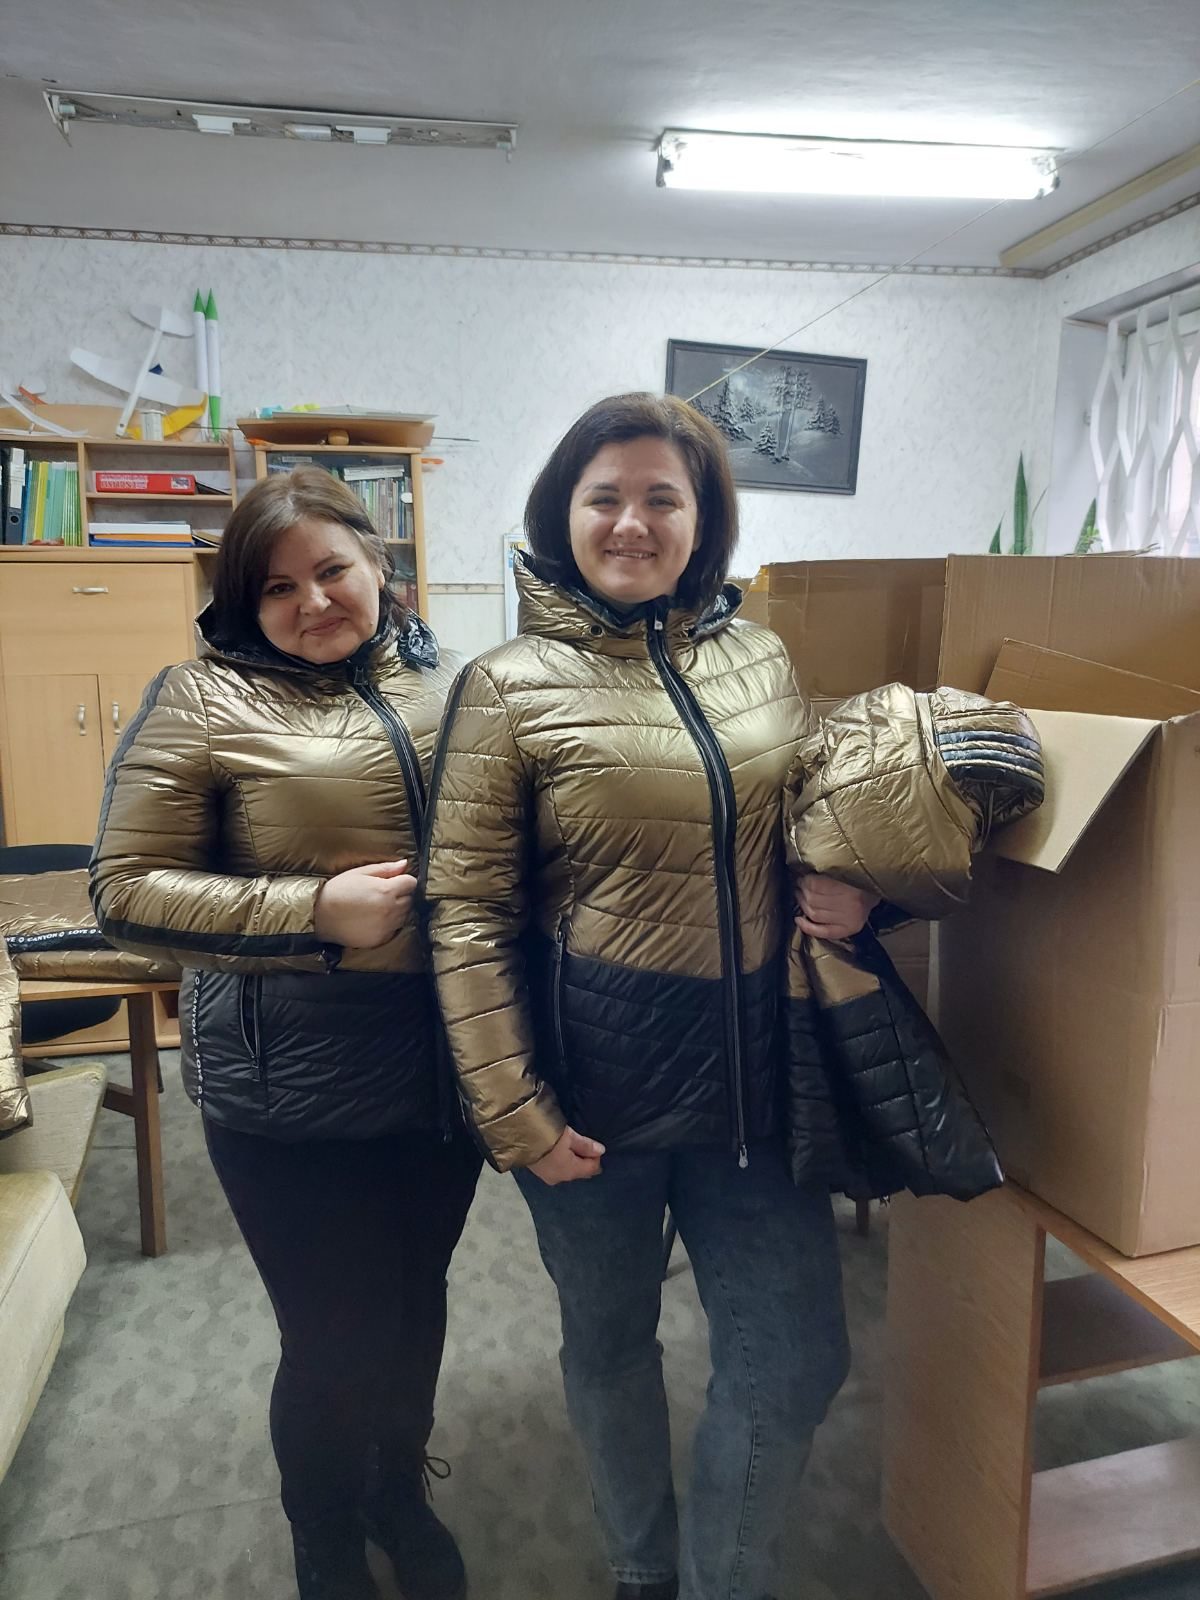 Bürgerinnen aus Bila Zerwka freuen sich über die gespendeten Jacken. (Wird bei Klick vergrößert)